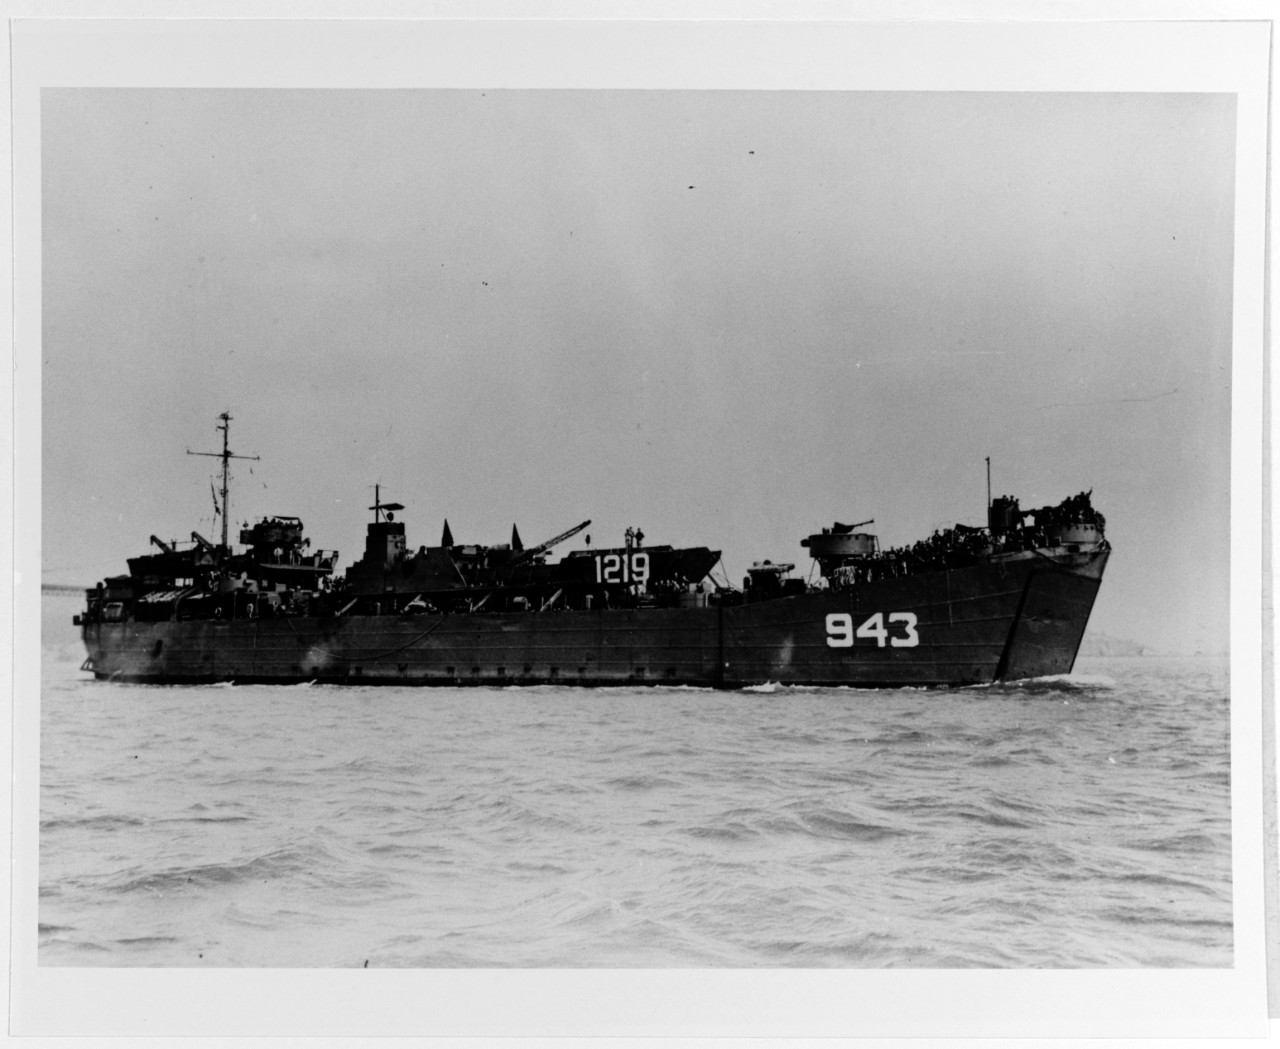 USS LST-943